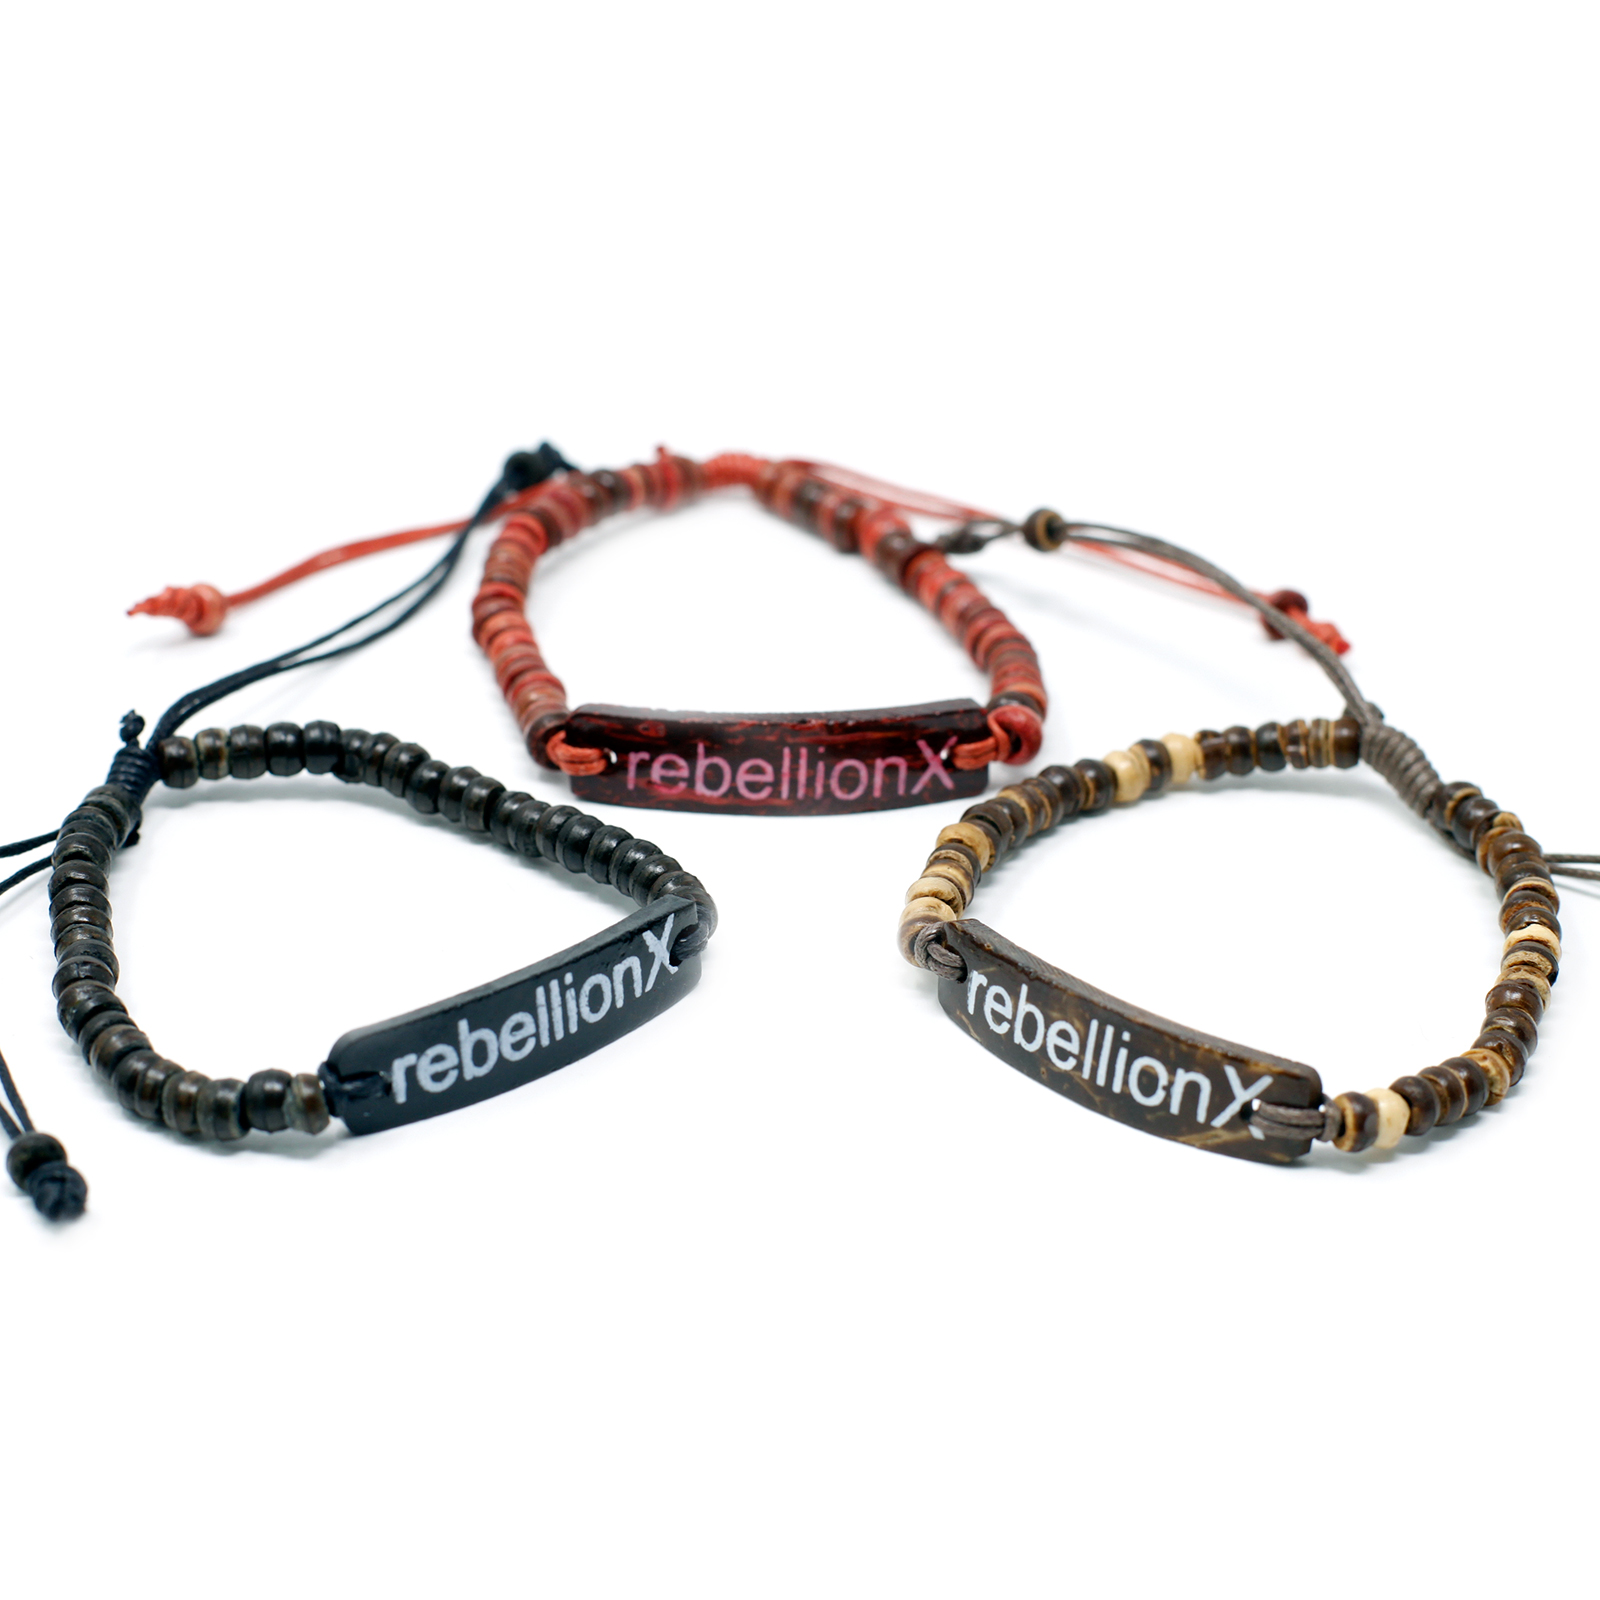 6 x Coco Slogan Bracelets - Rebellion X